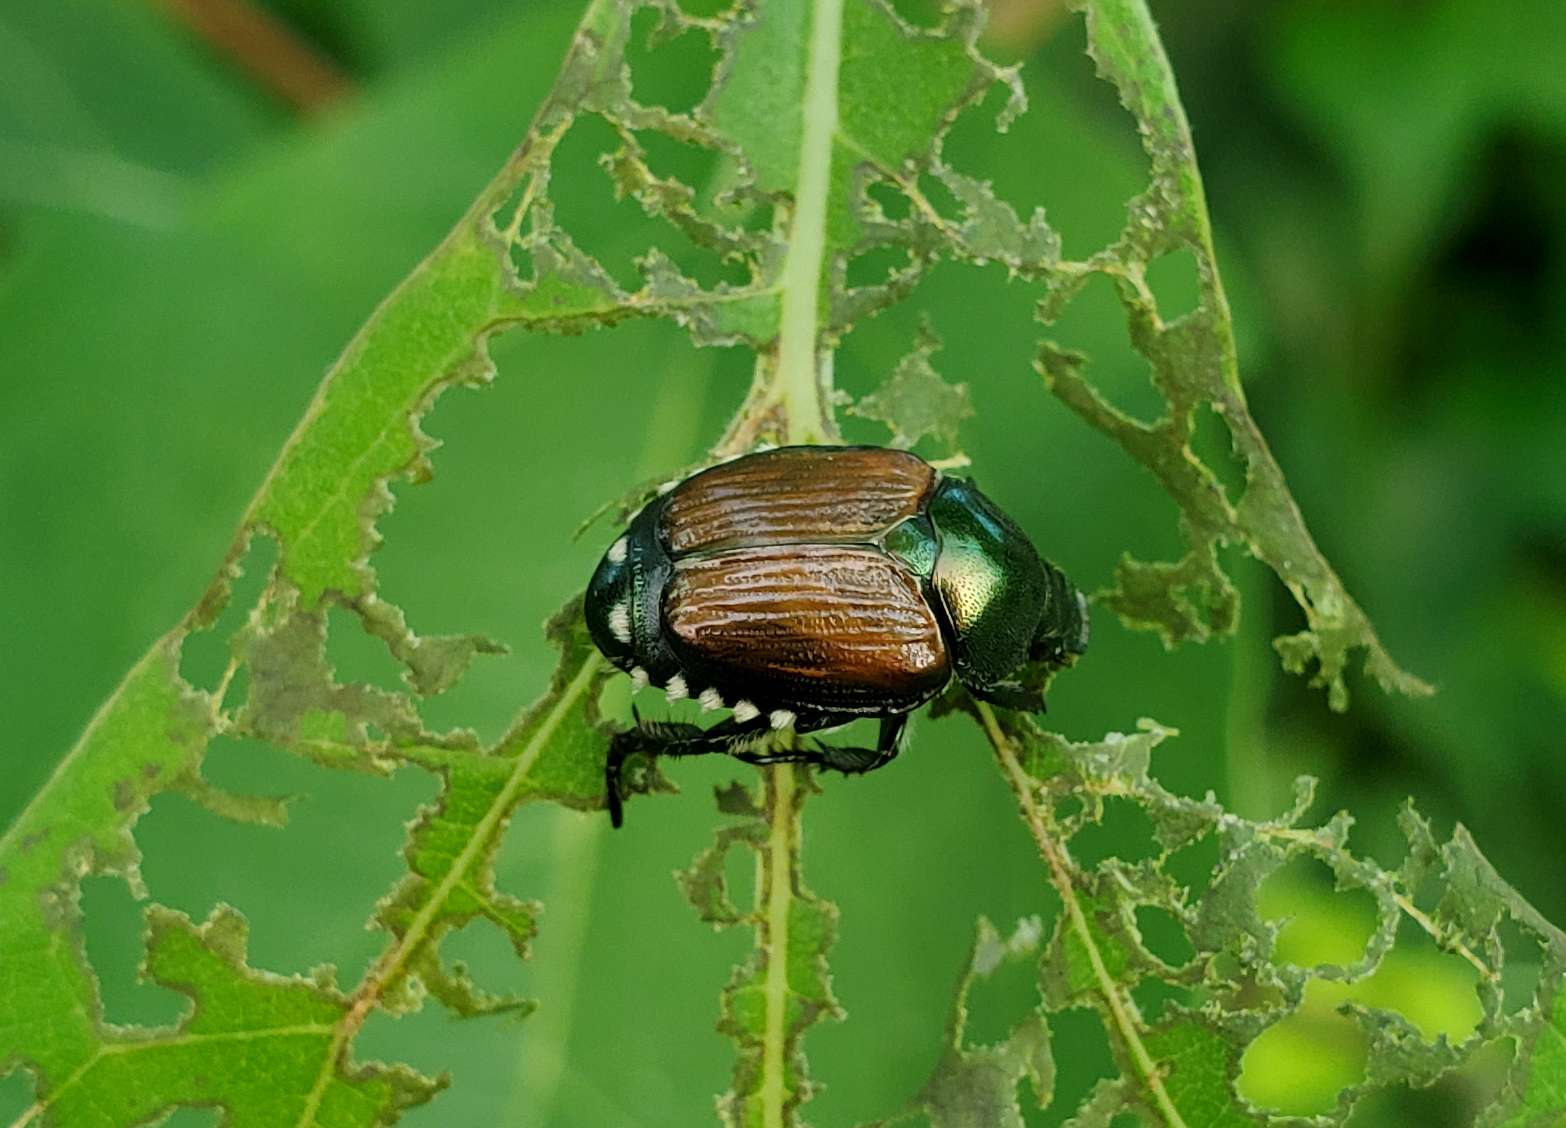 Japanese beetle on leaf.